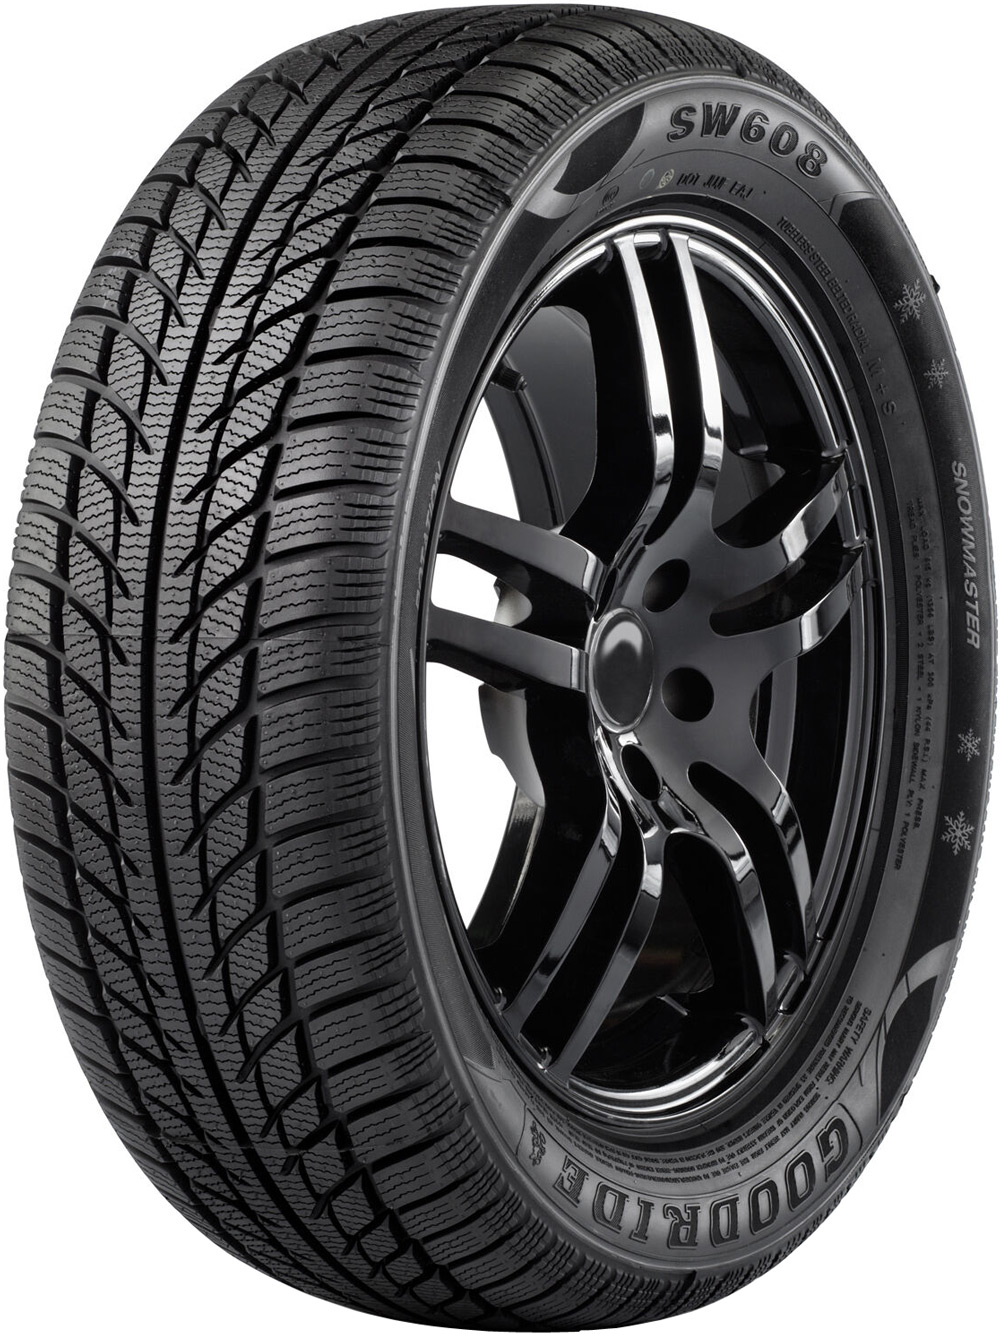 Автомобилни гуми GOODRIDE SW608 XL 245/45 R17 99V